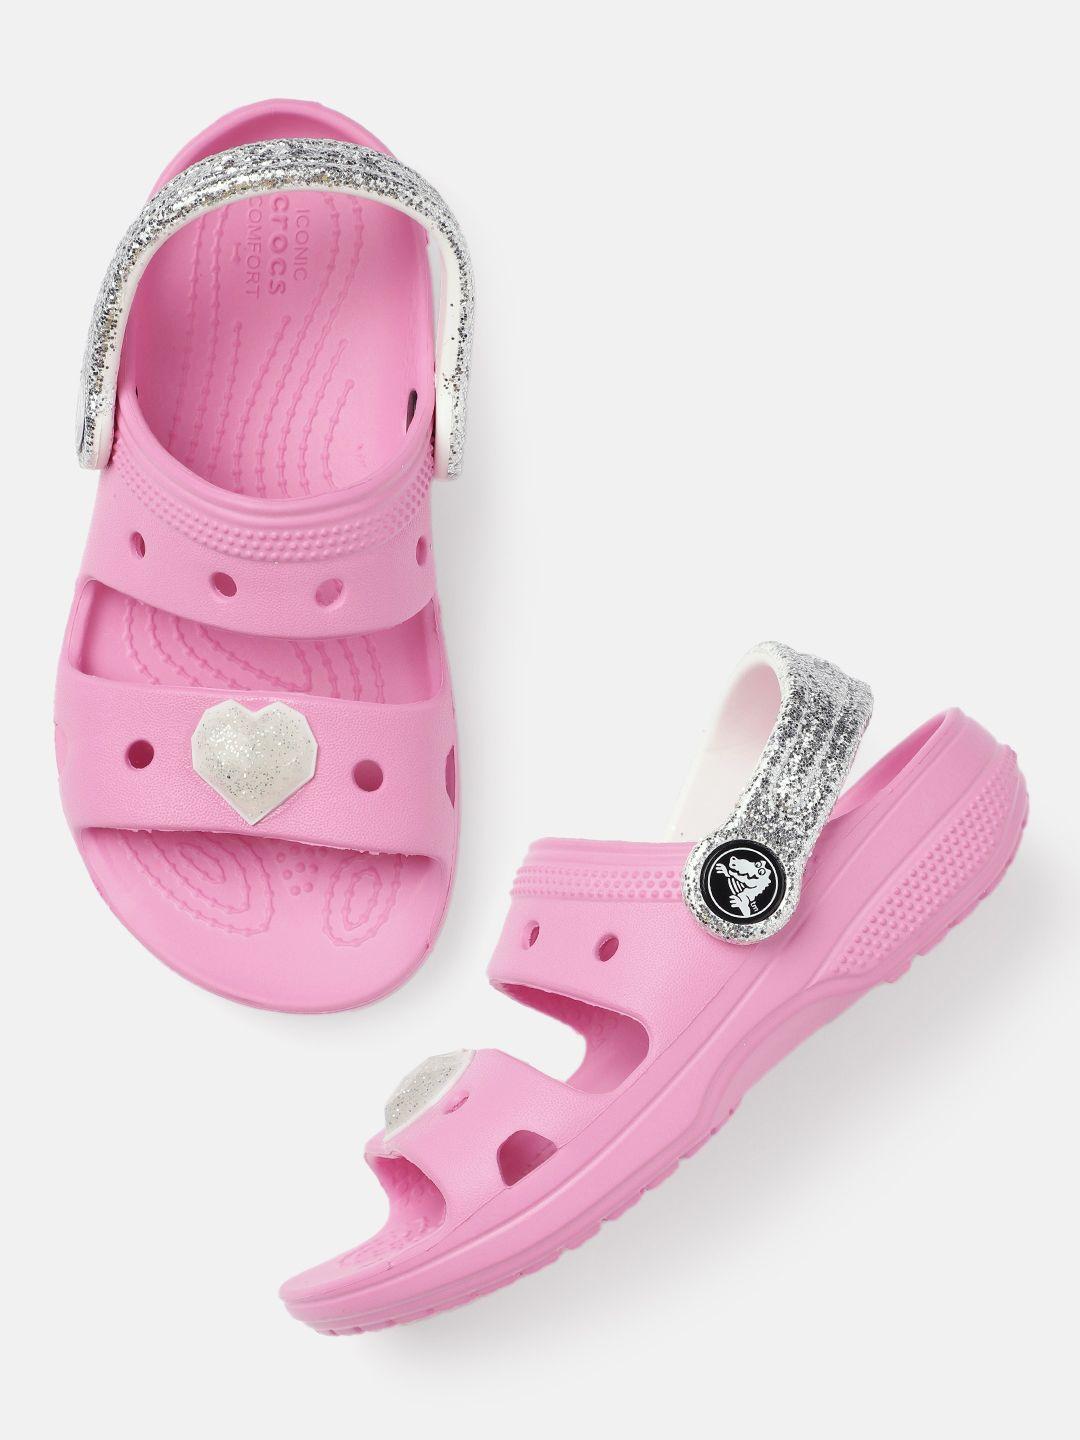 crocs unisex kids pink embellished croslite clogs